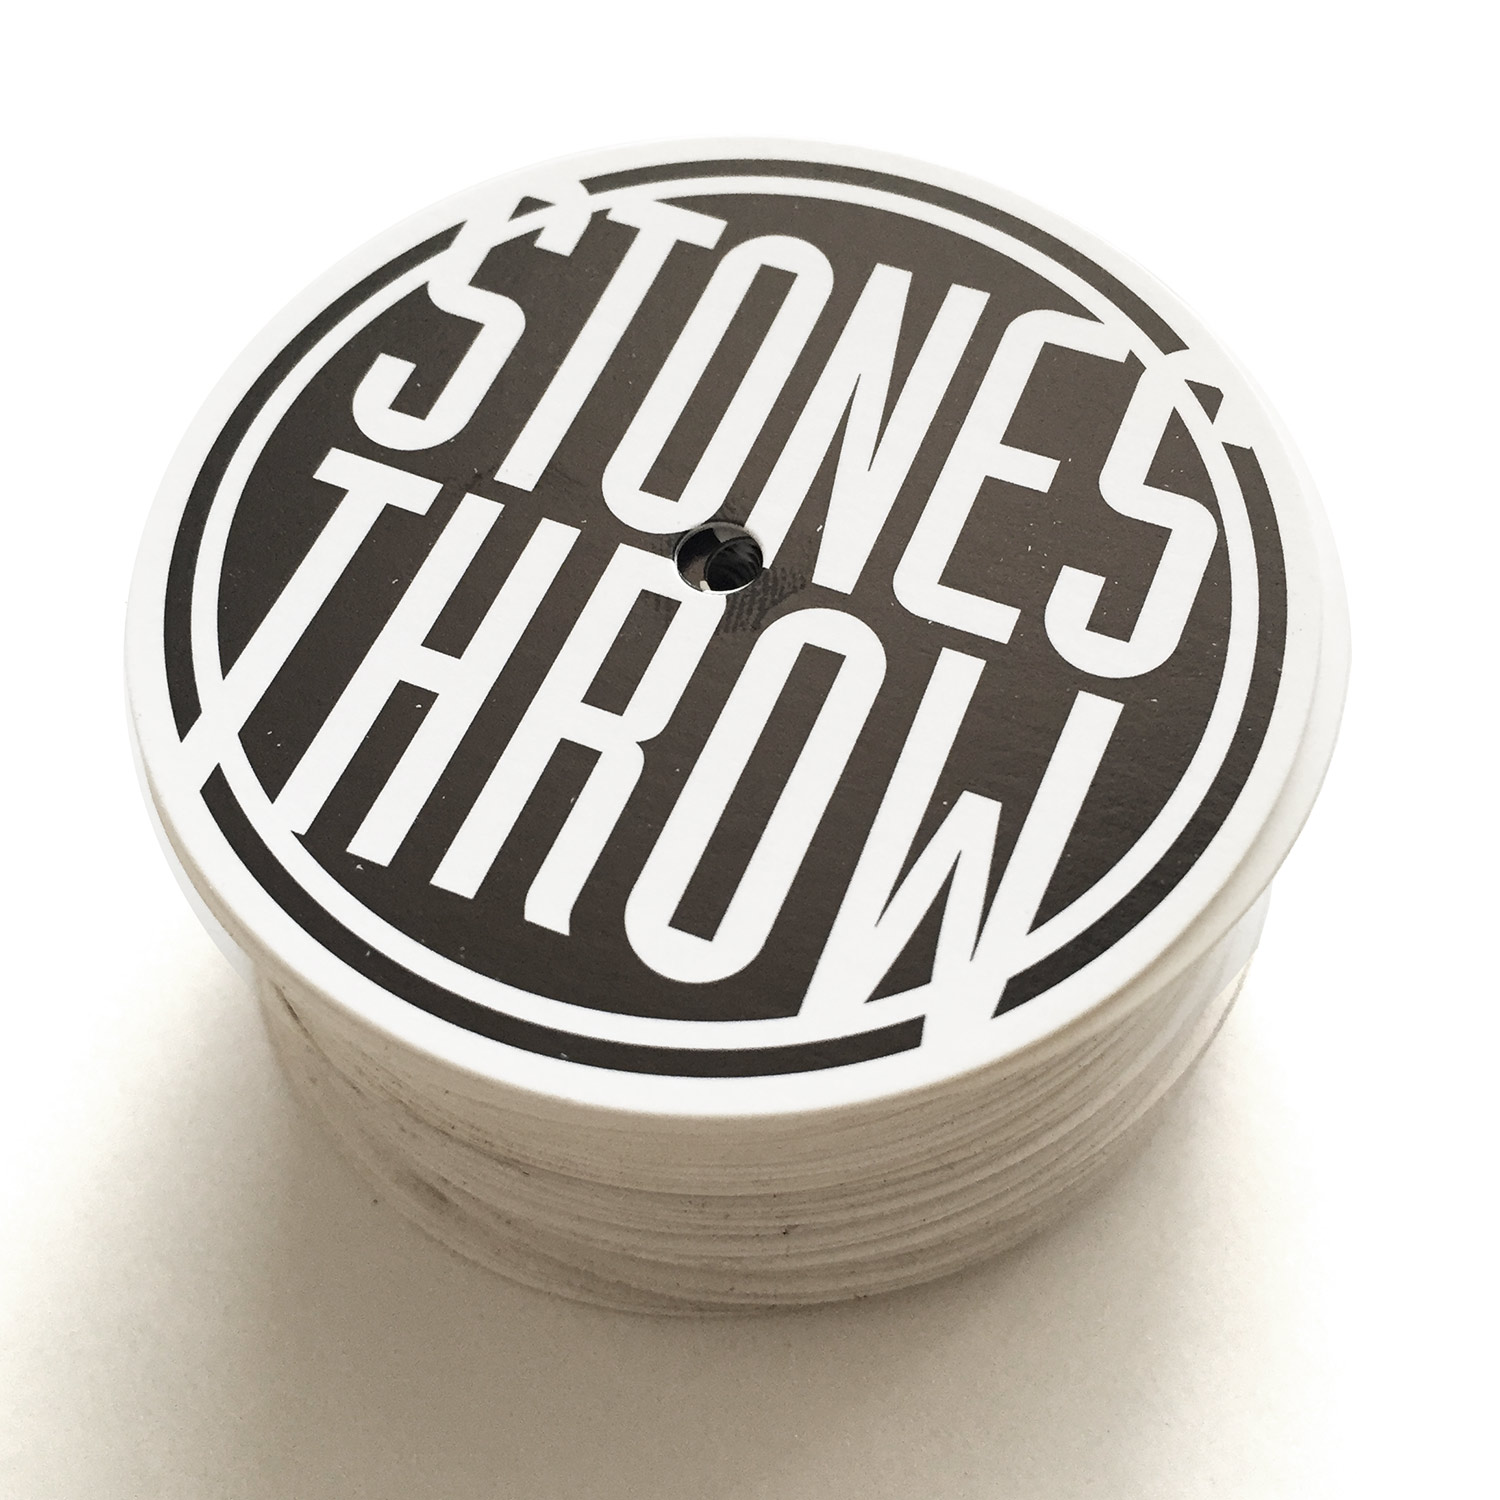 Stones Throw Podcast